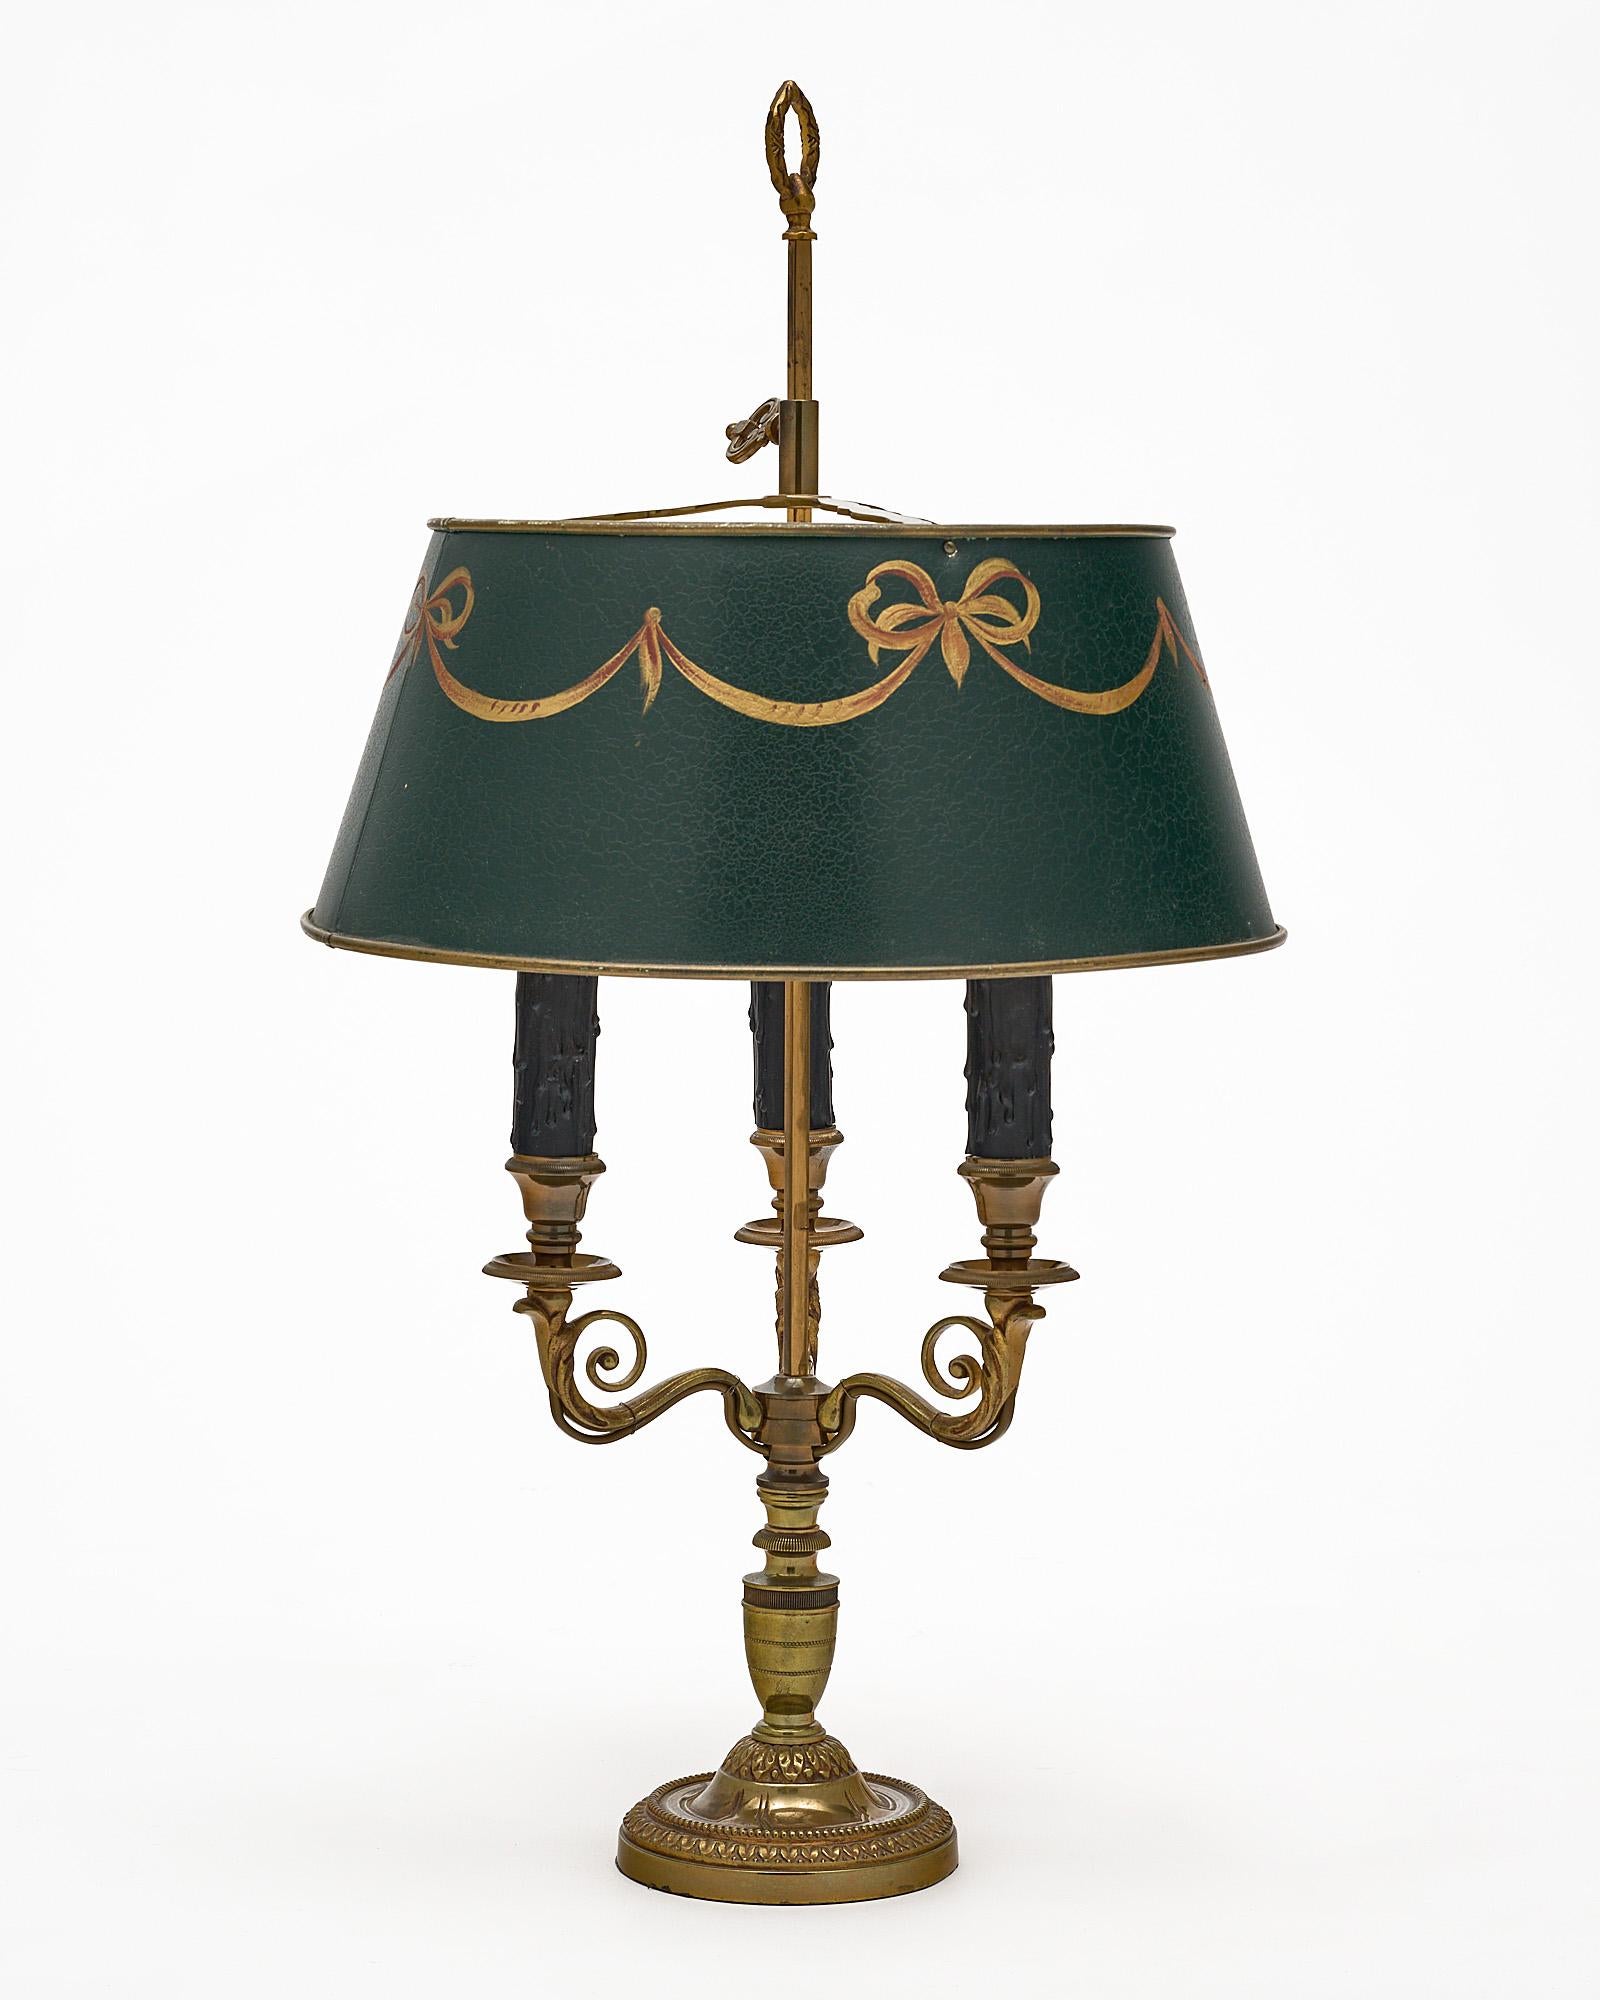 Lampe Bouillotte ; française ; dans le style Empire français. Cette pièce est composée d'une base en bronze finement coulé et de trois bras. Il y a un magnifique abat-jour vert réglable, peint à la main et recouvert de feuilles d'or. Il a été